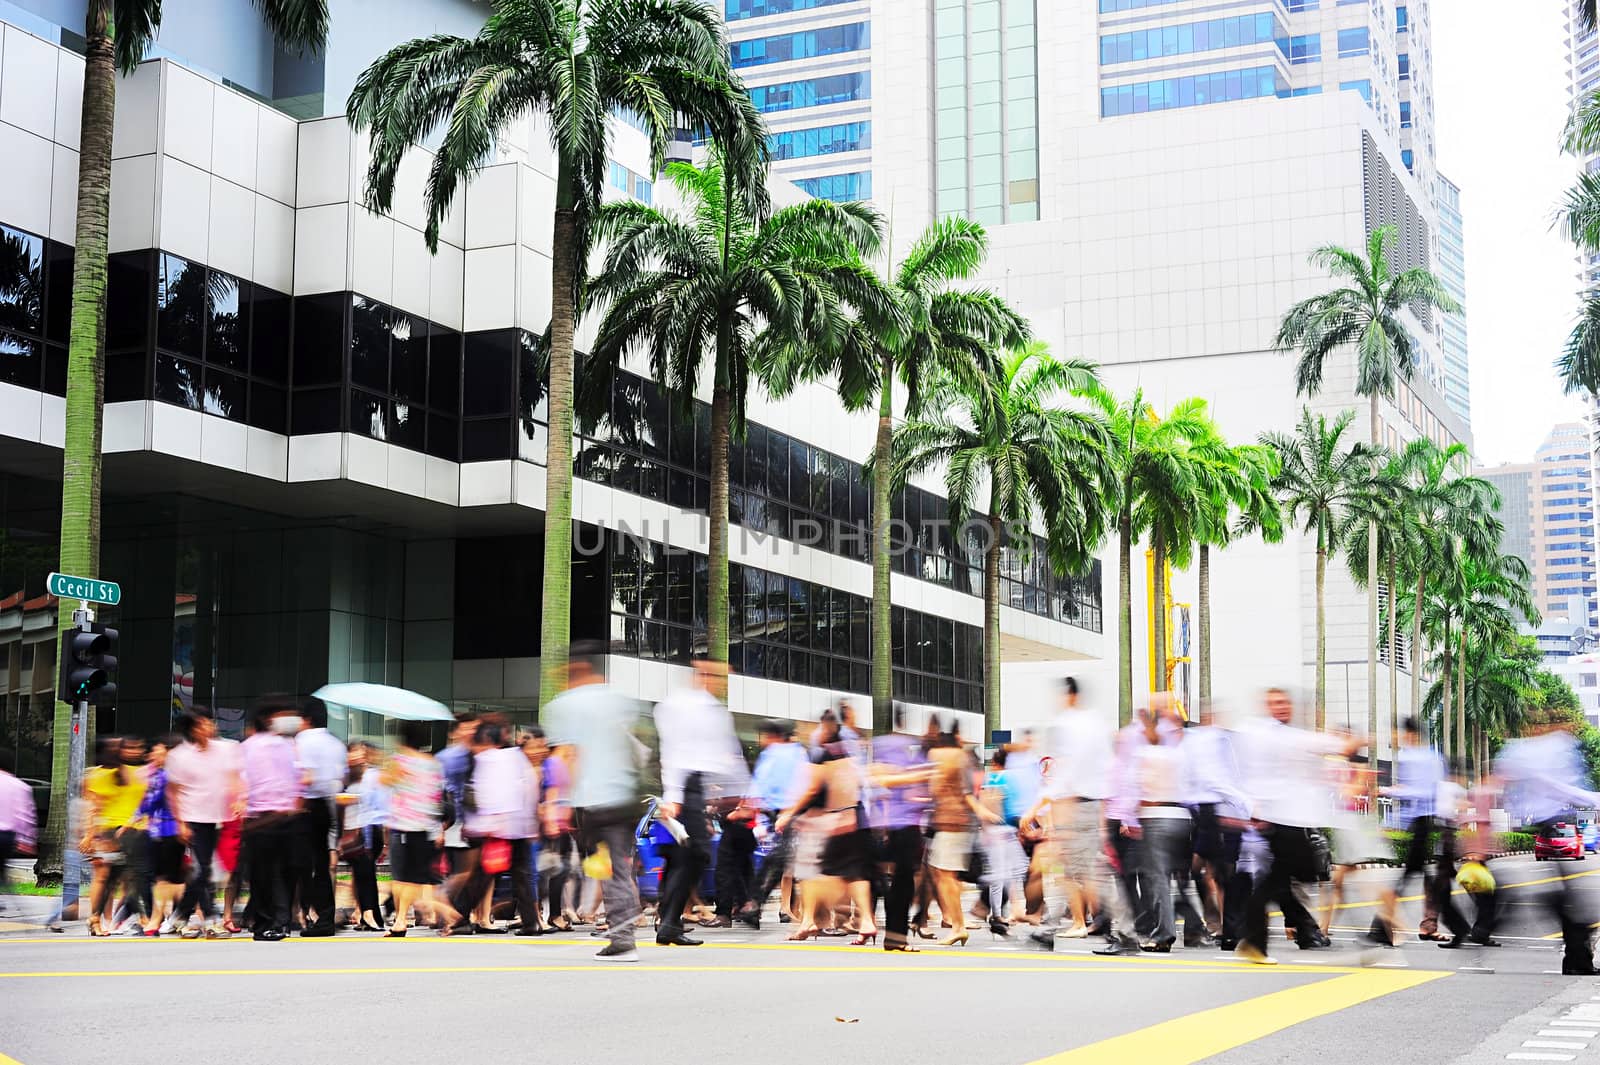 Rush hour in Singapore by joyfull